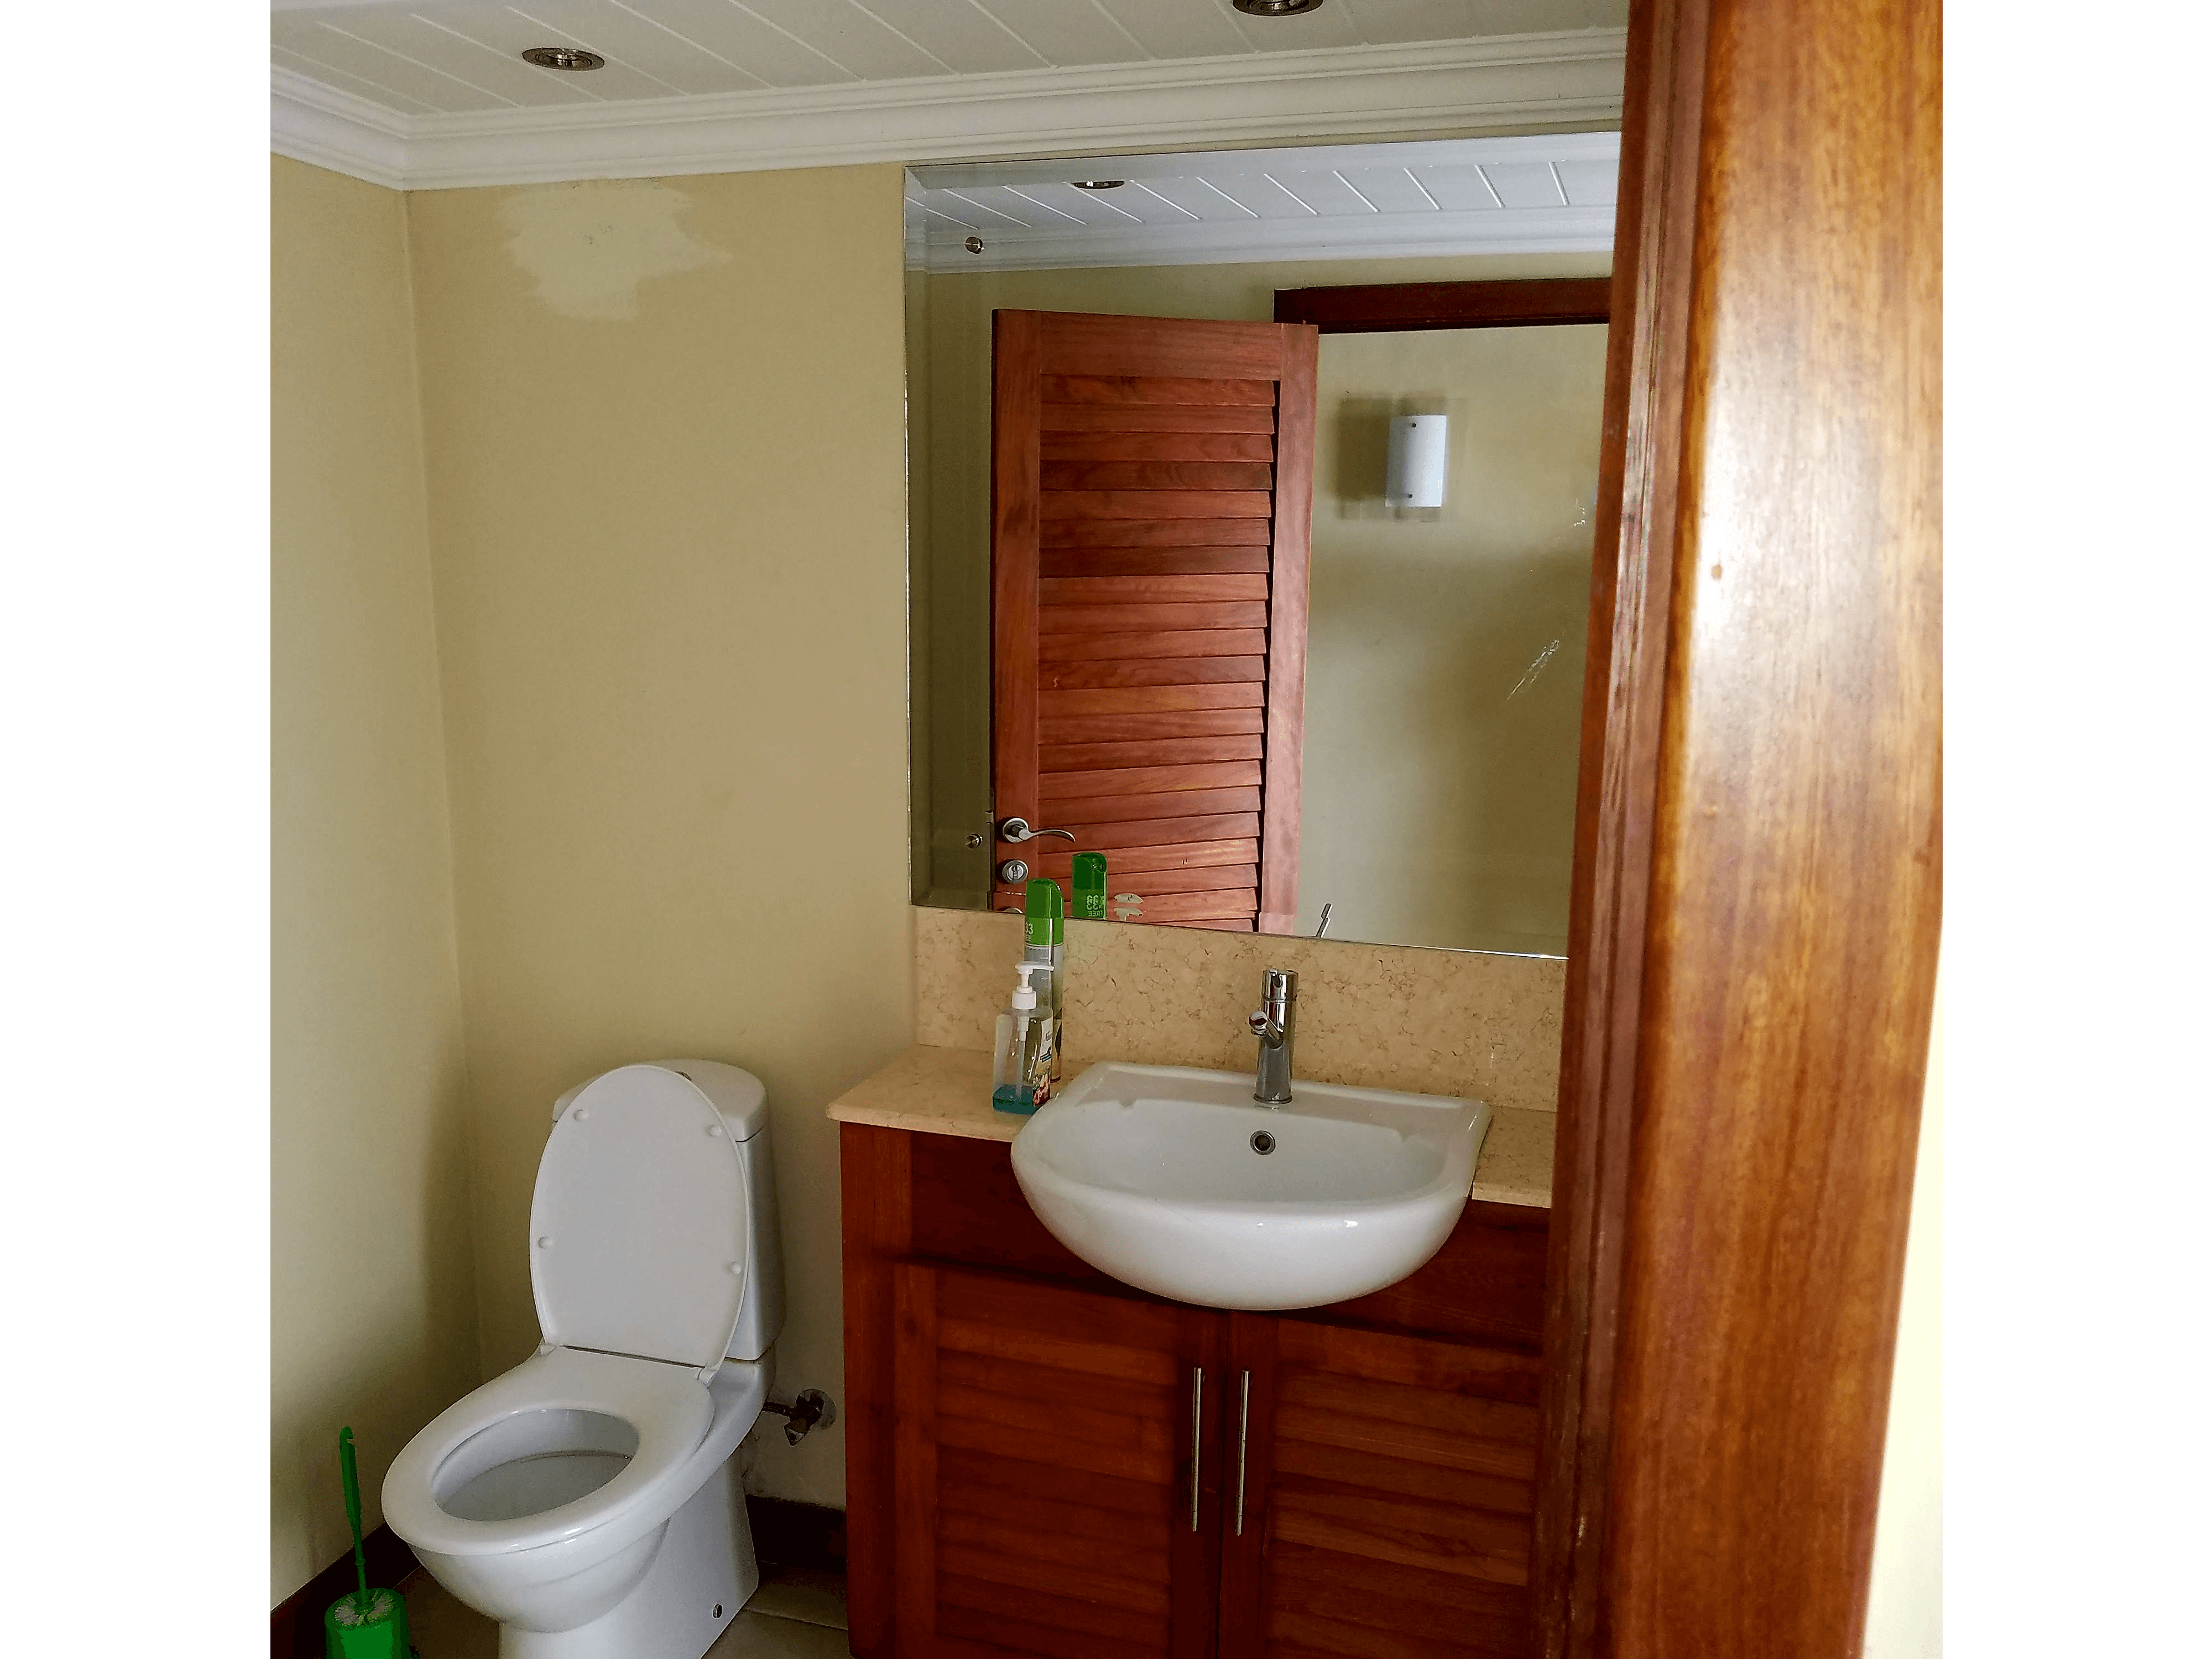 Ванная комната 2